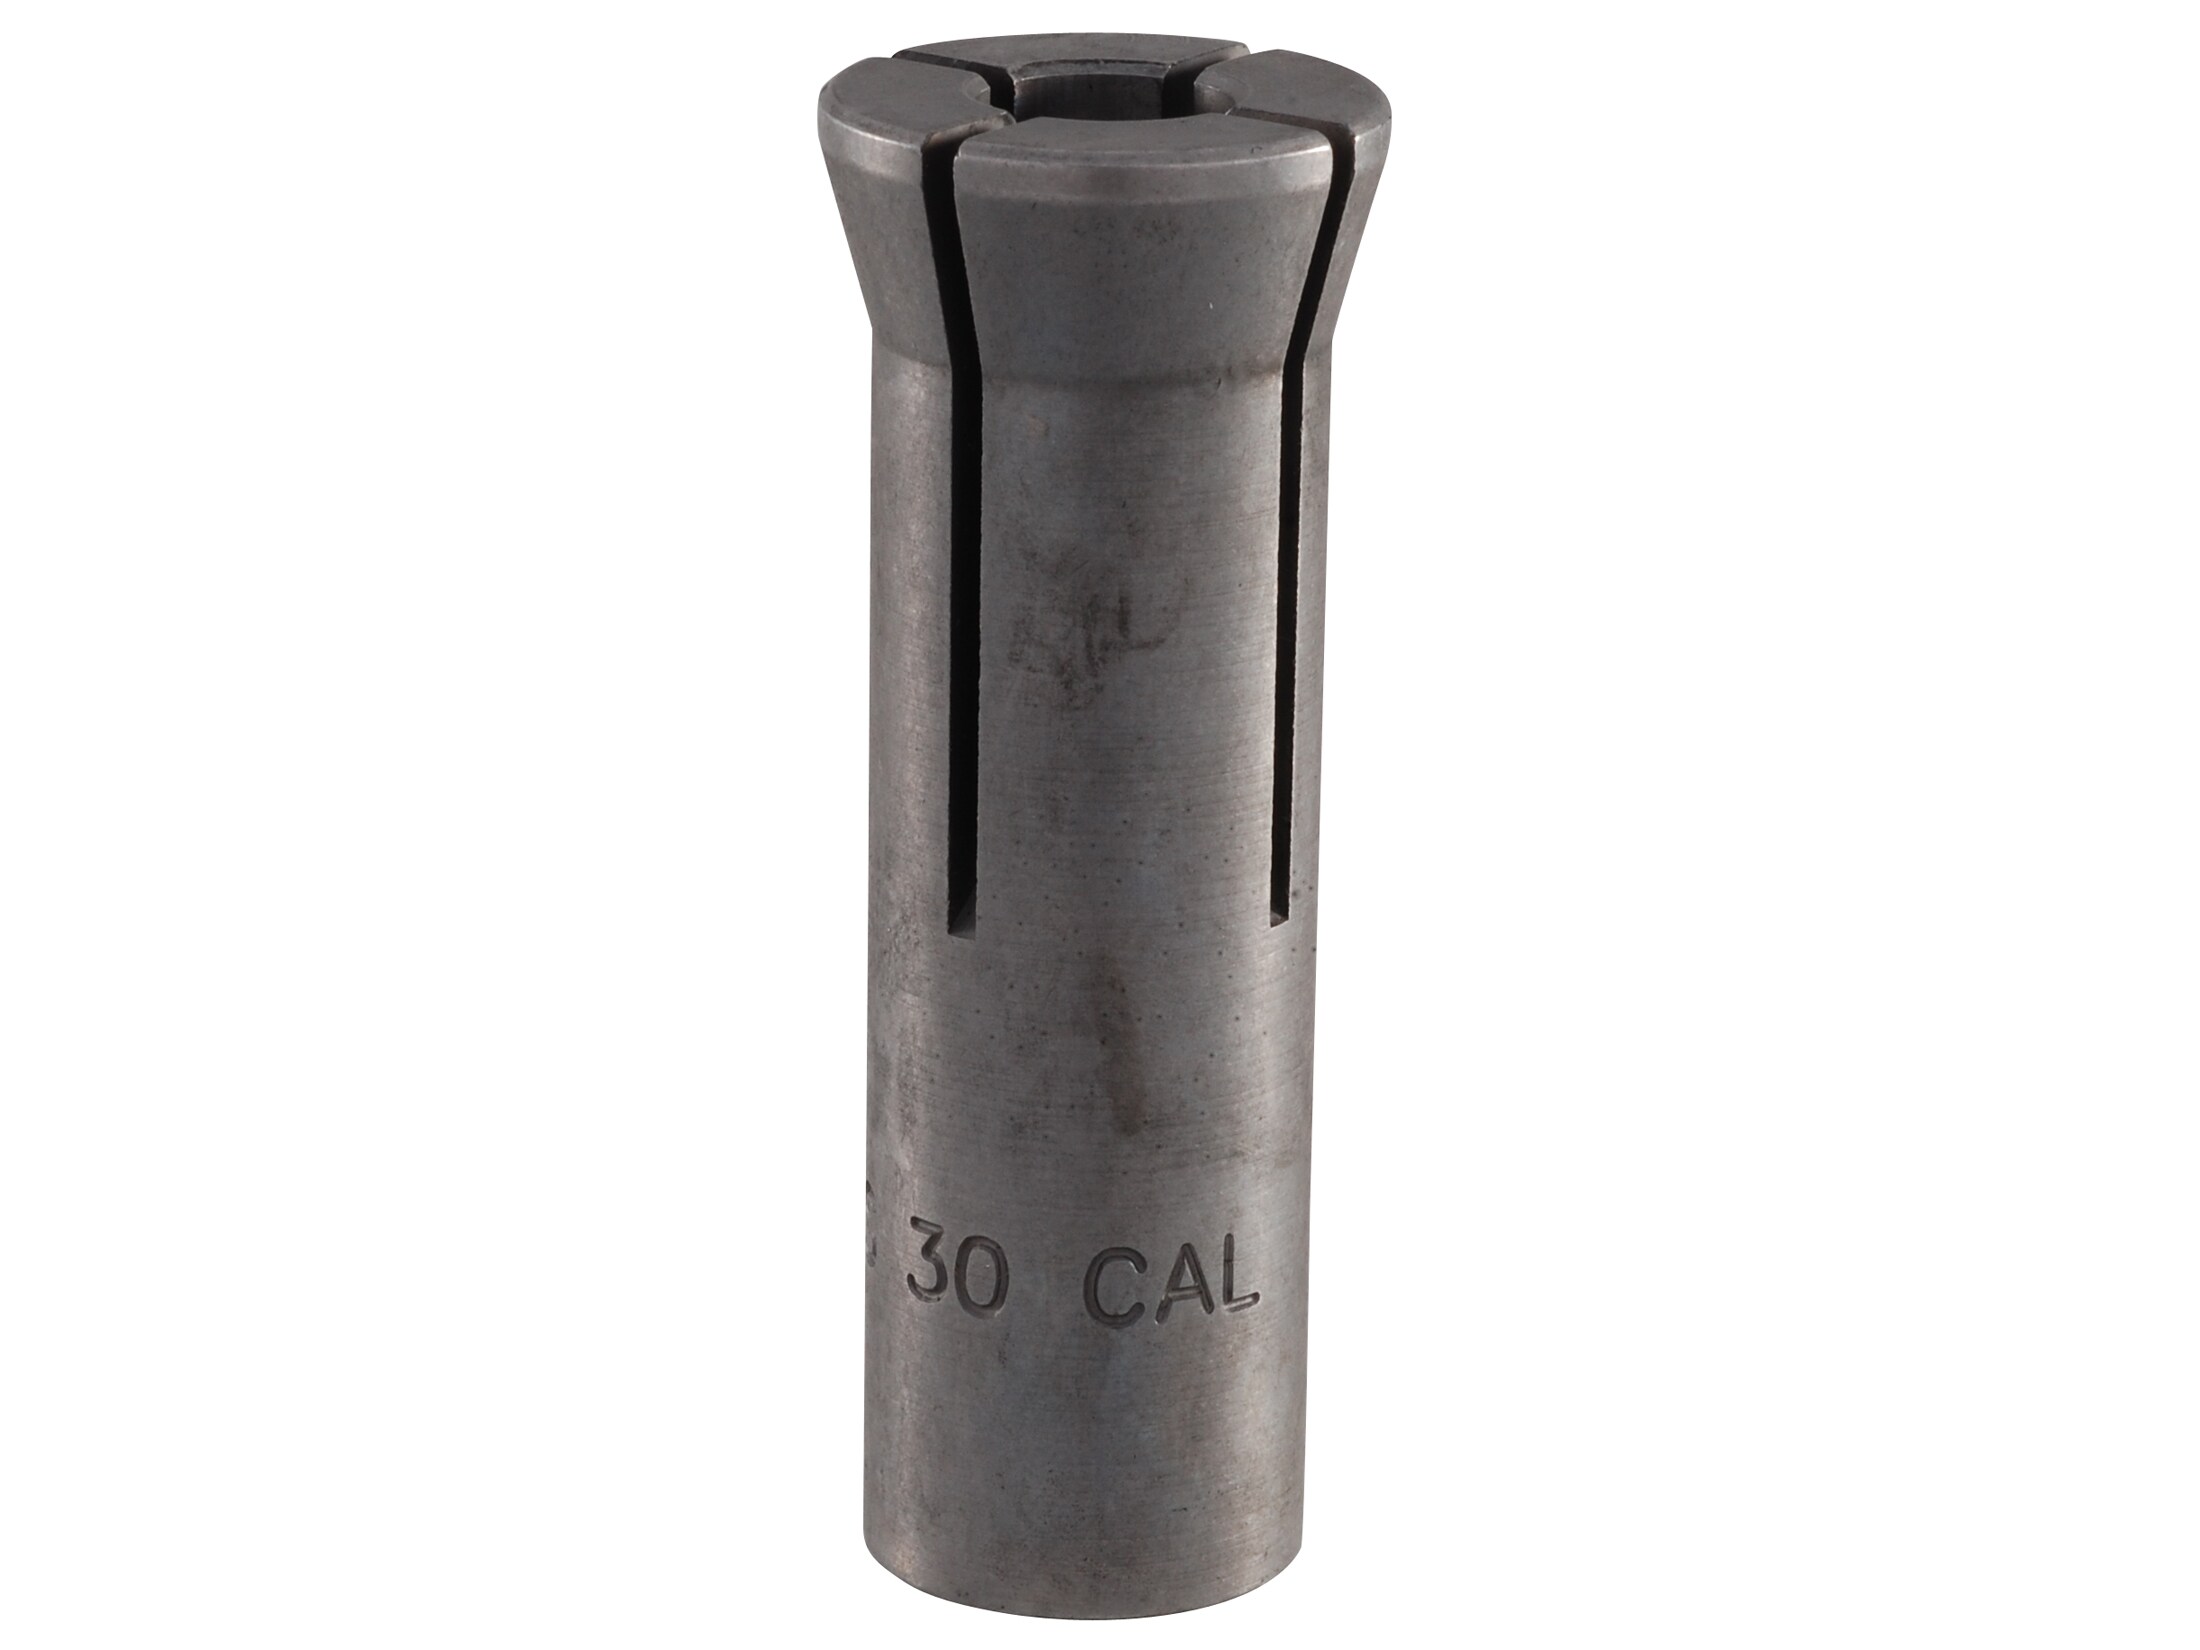 RCBS Standard Bullet Puller Collet for Wide Range of Cases